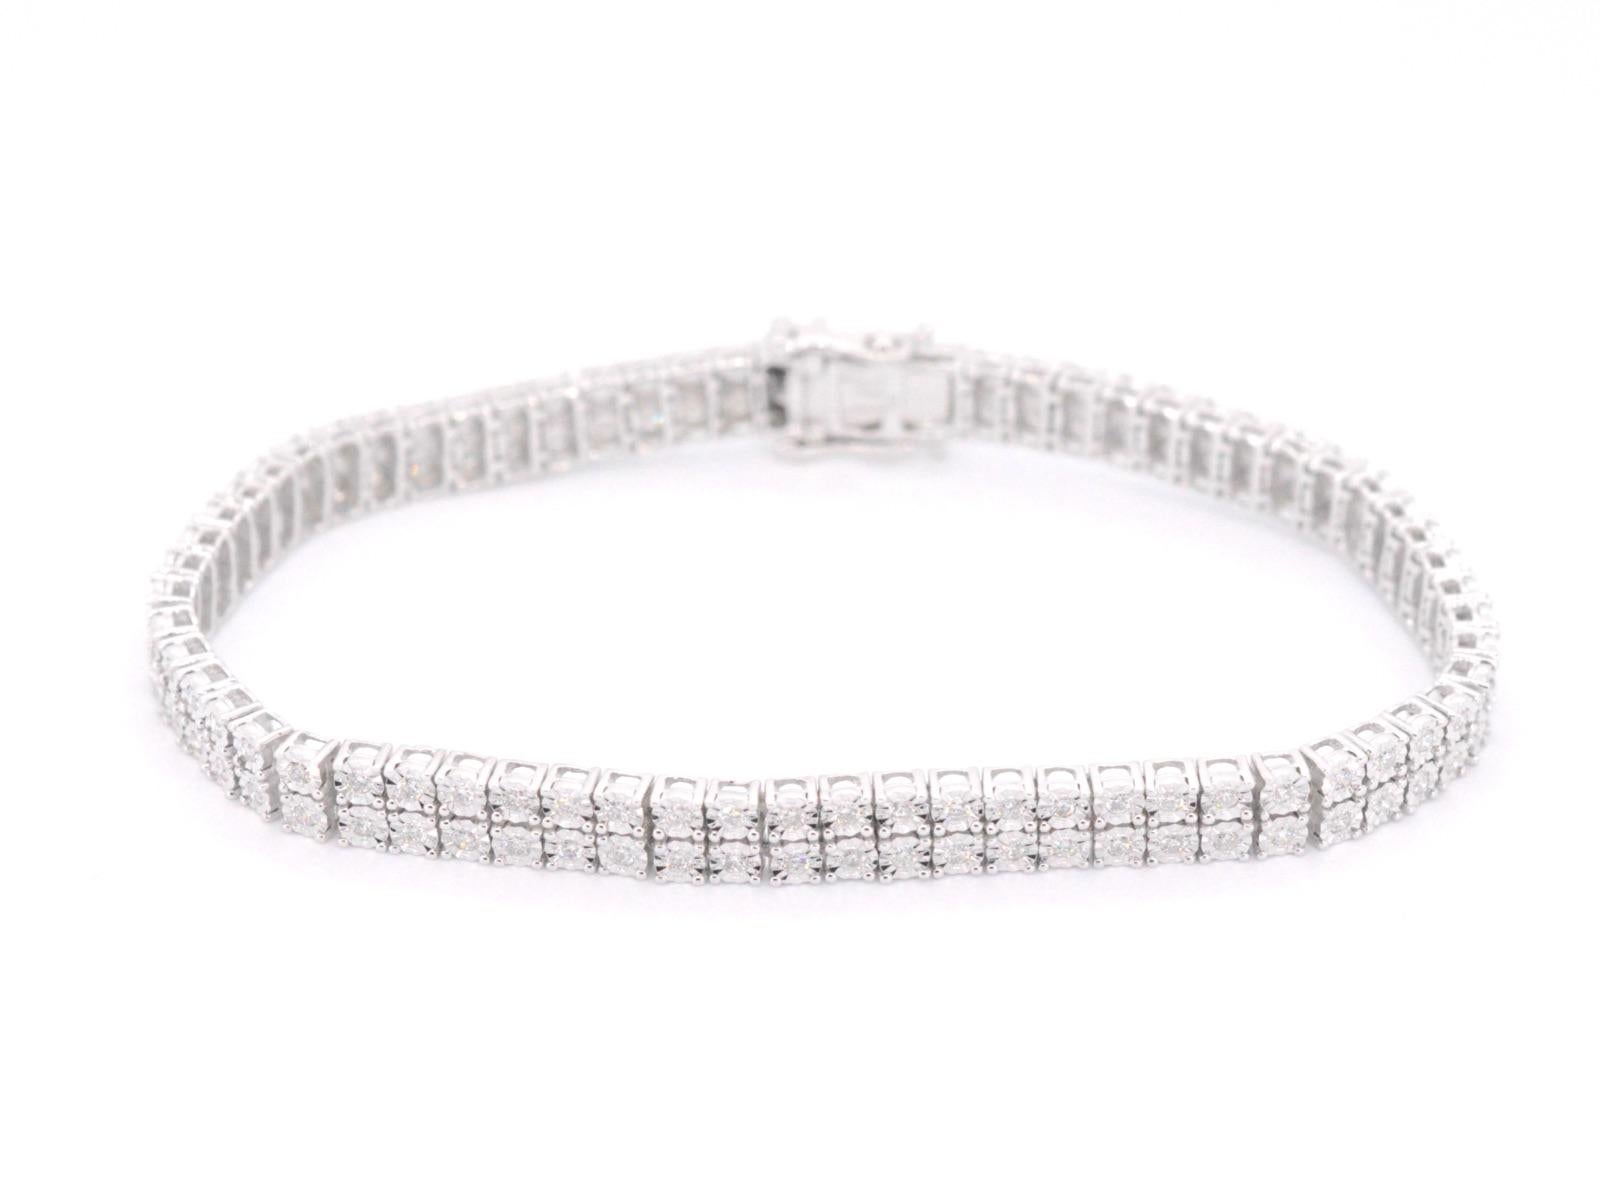 Un bracelet de tennis en or blanc avec 2 rangées de diamants totalisant 1,50 carats est un bijou éblouissant qui présente des rangées de diamants étincelants sertis dans une bande d'or blanc lustré. Le poids de 1,50 carat des diamants fait de ce